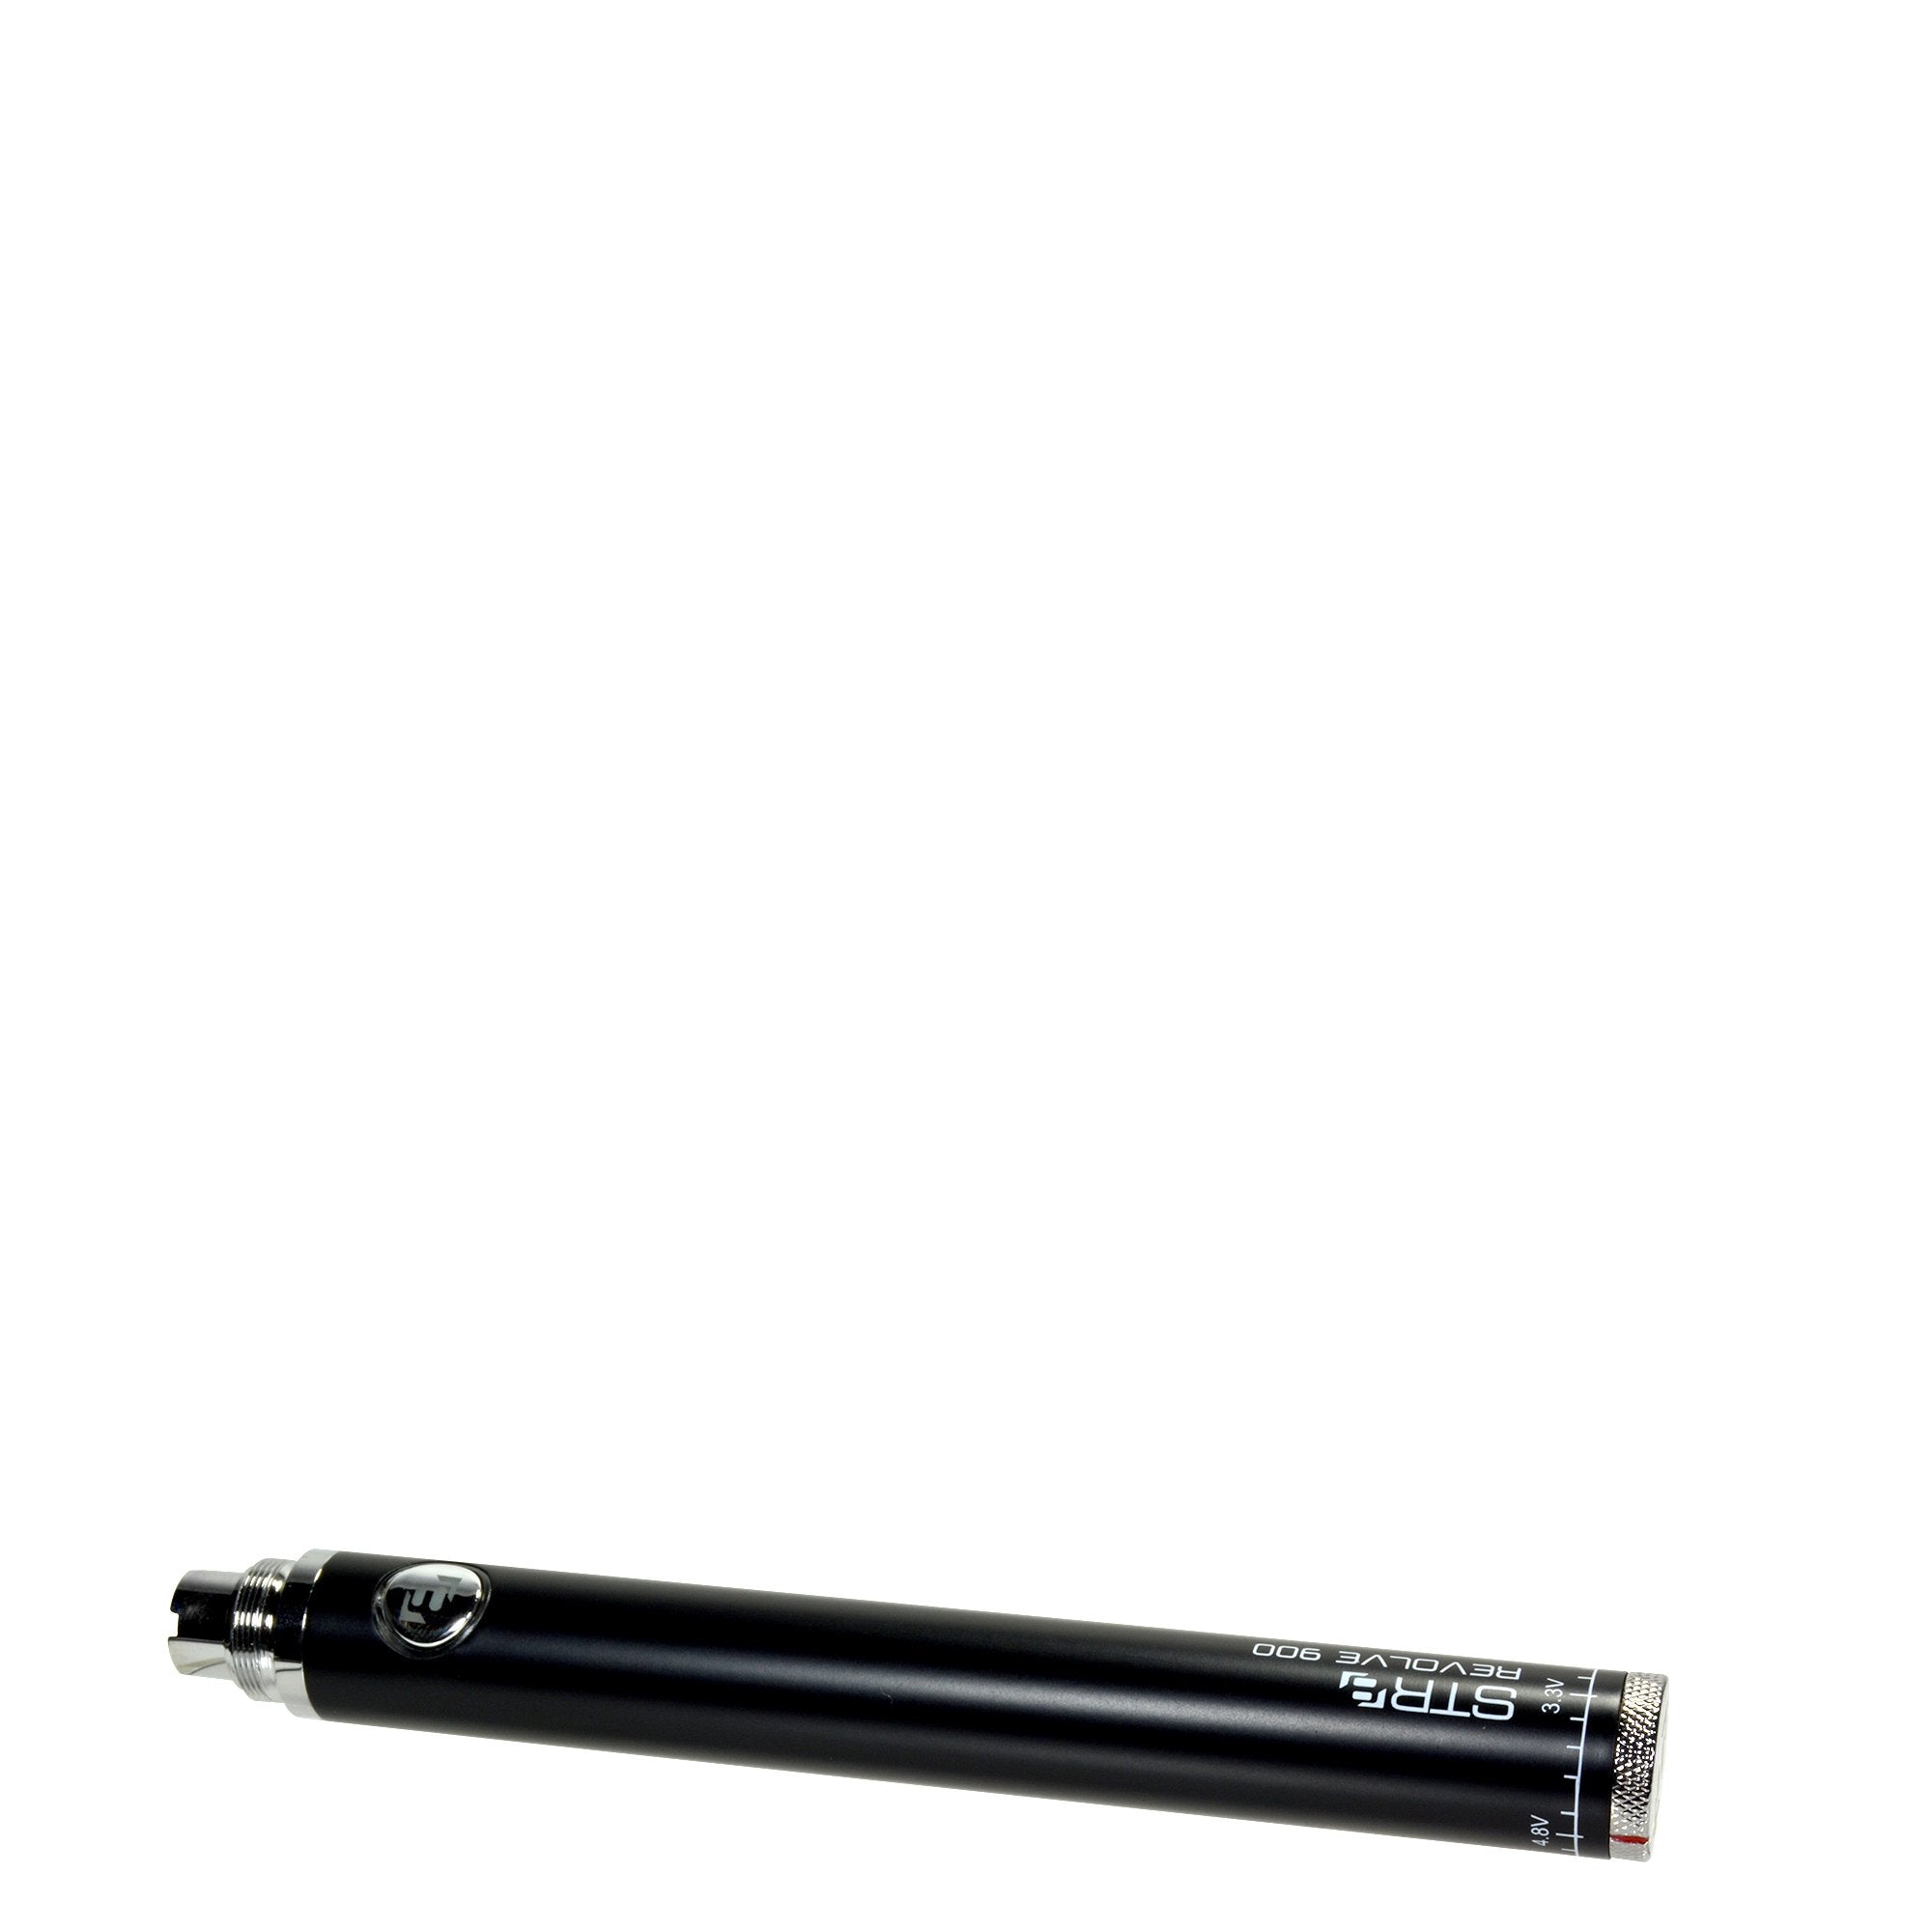 STR8 | Revolve Evod Vape Battery | 900mAh - Black - 5 Count - 2